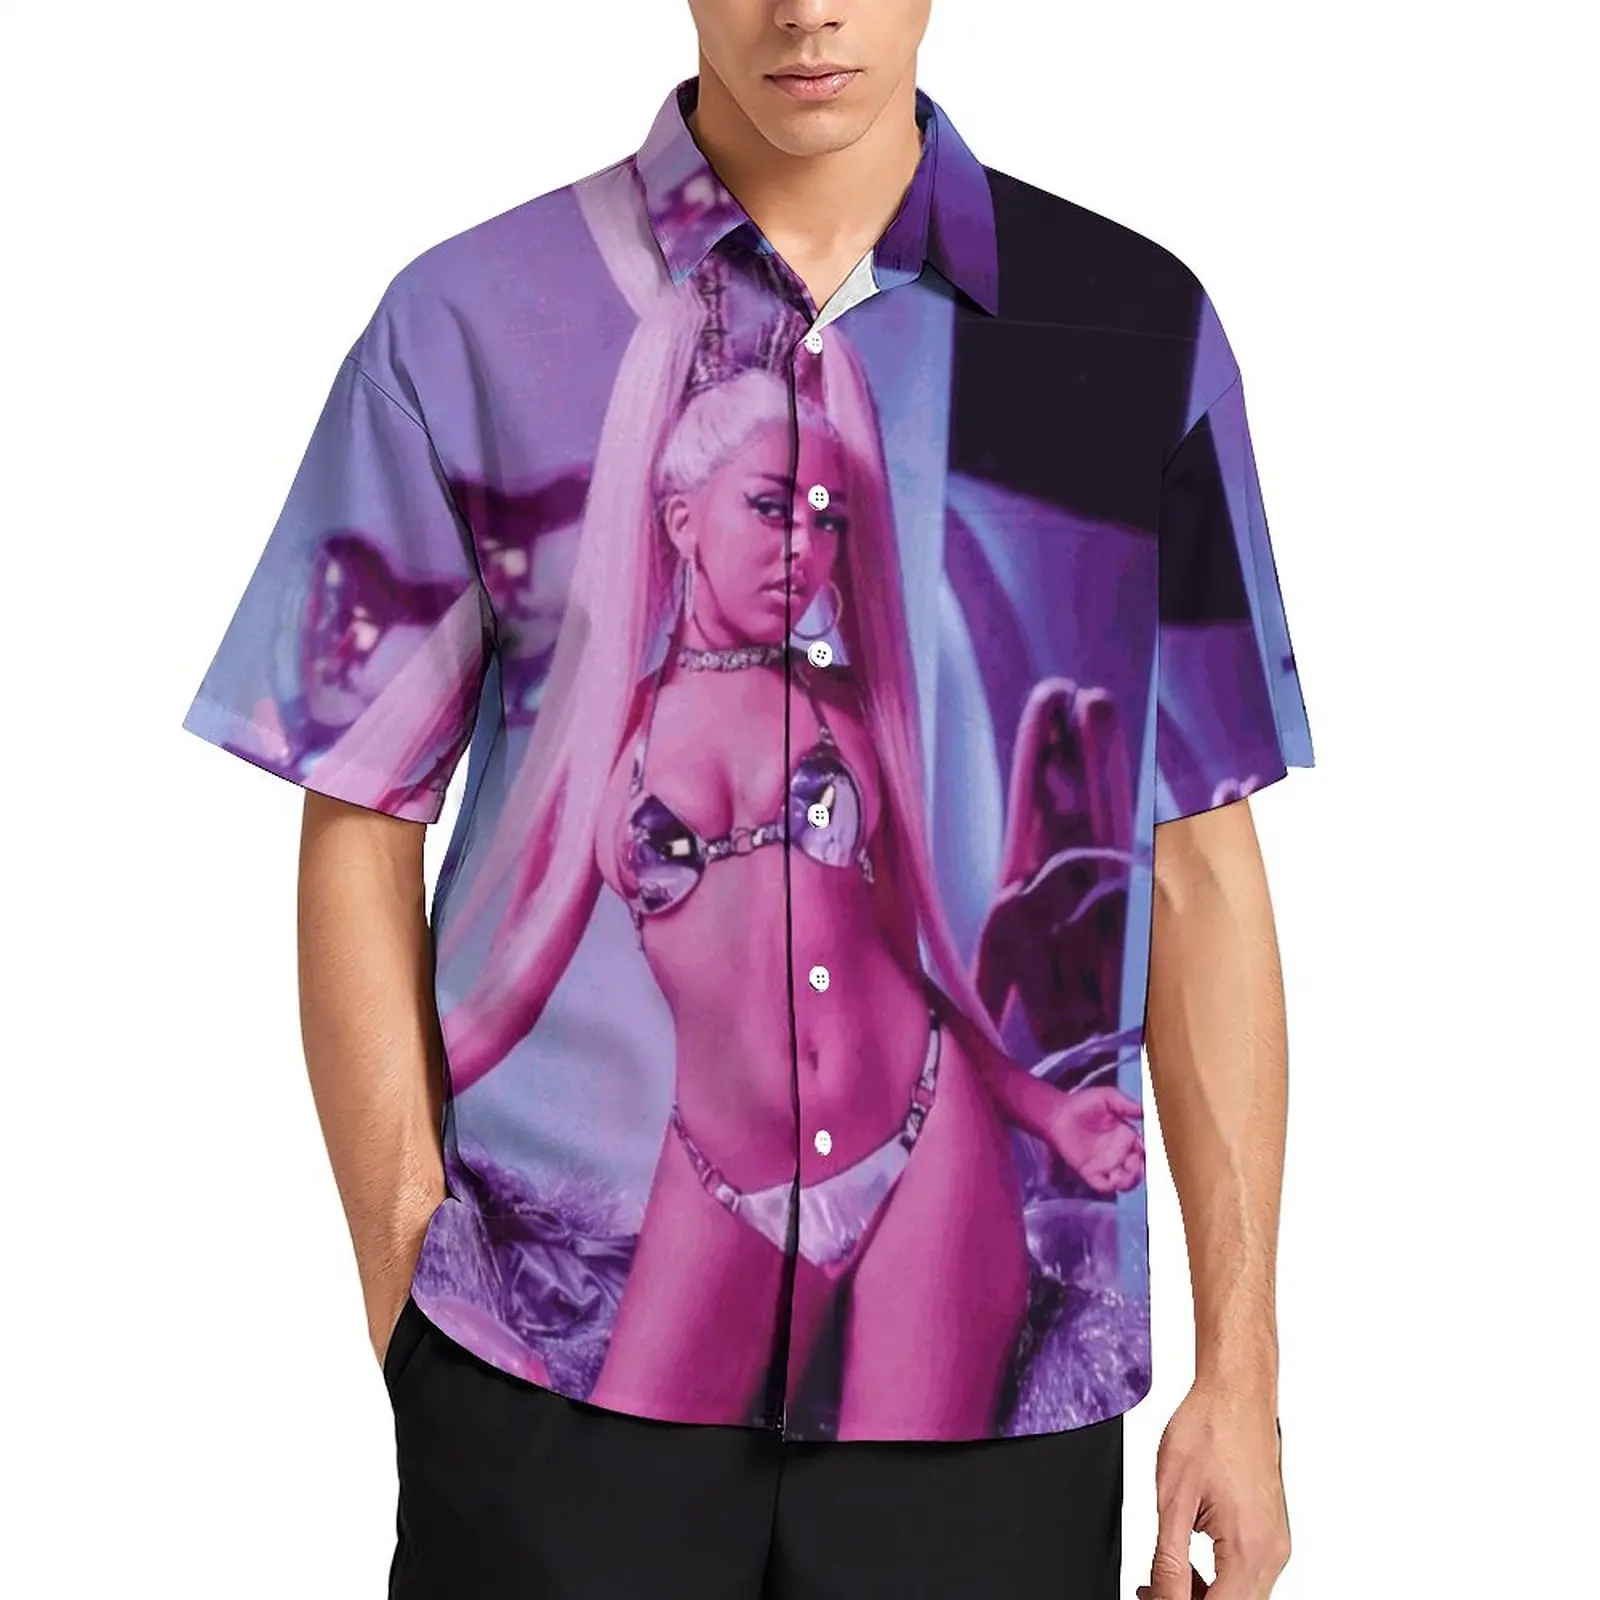 

Блузка Doja в стиле хип-поп для мужчин и женщин, пикантная Красивая Повседневная рубашка в стиле интернет-девушки, с принтом кота и музыки, модная рубашка оверсайз с коротким рукавом для отпуска, на лето